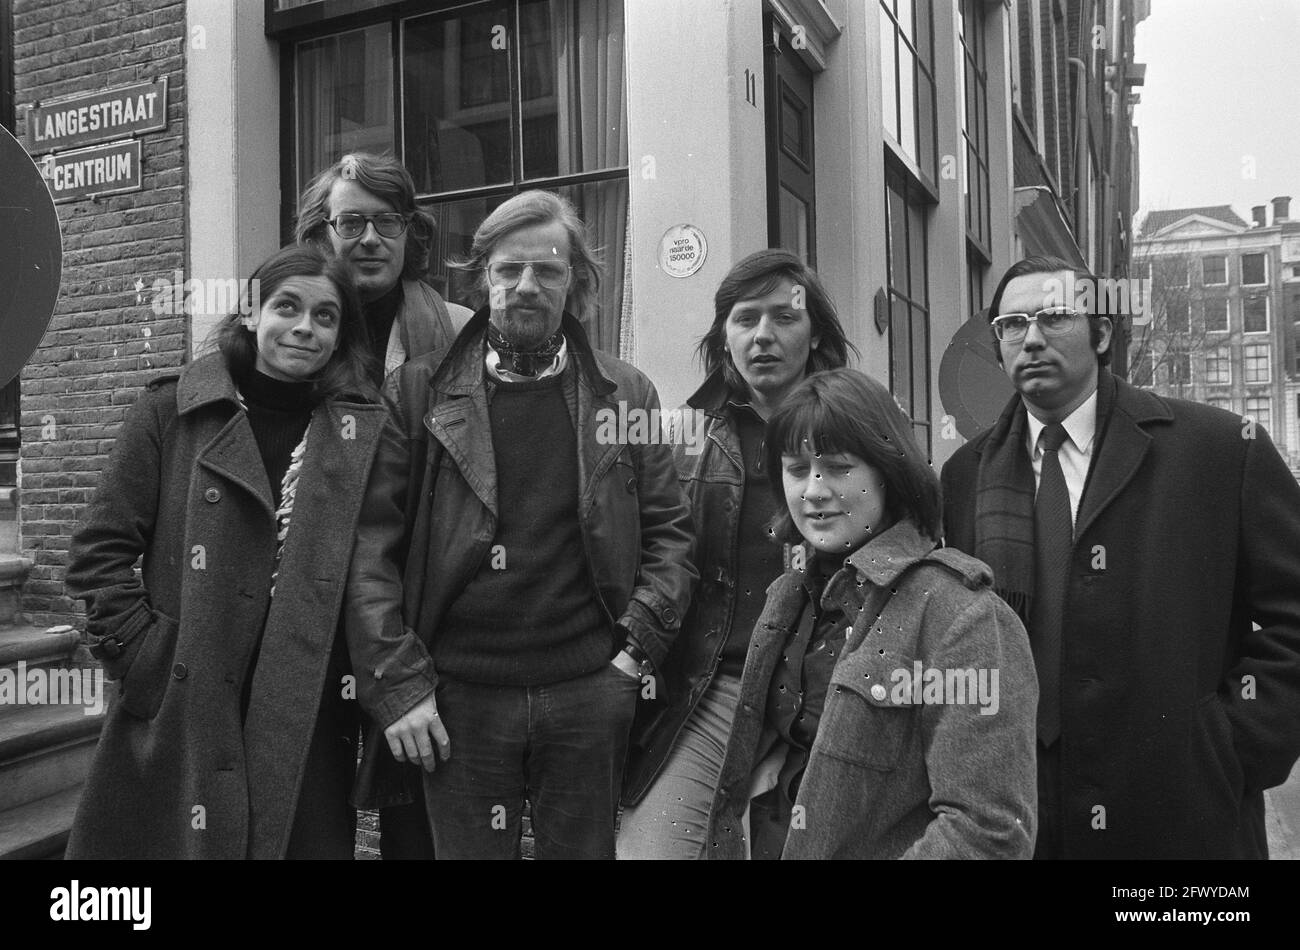 Rechtswinkel, chercheurs en aide juridique, affectation Volksrant, 11 mars 1974, portraits de groupe, Aide juridique, pays-Bas, agence de presse du XXe siècle Banque D'Images